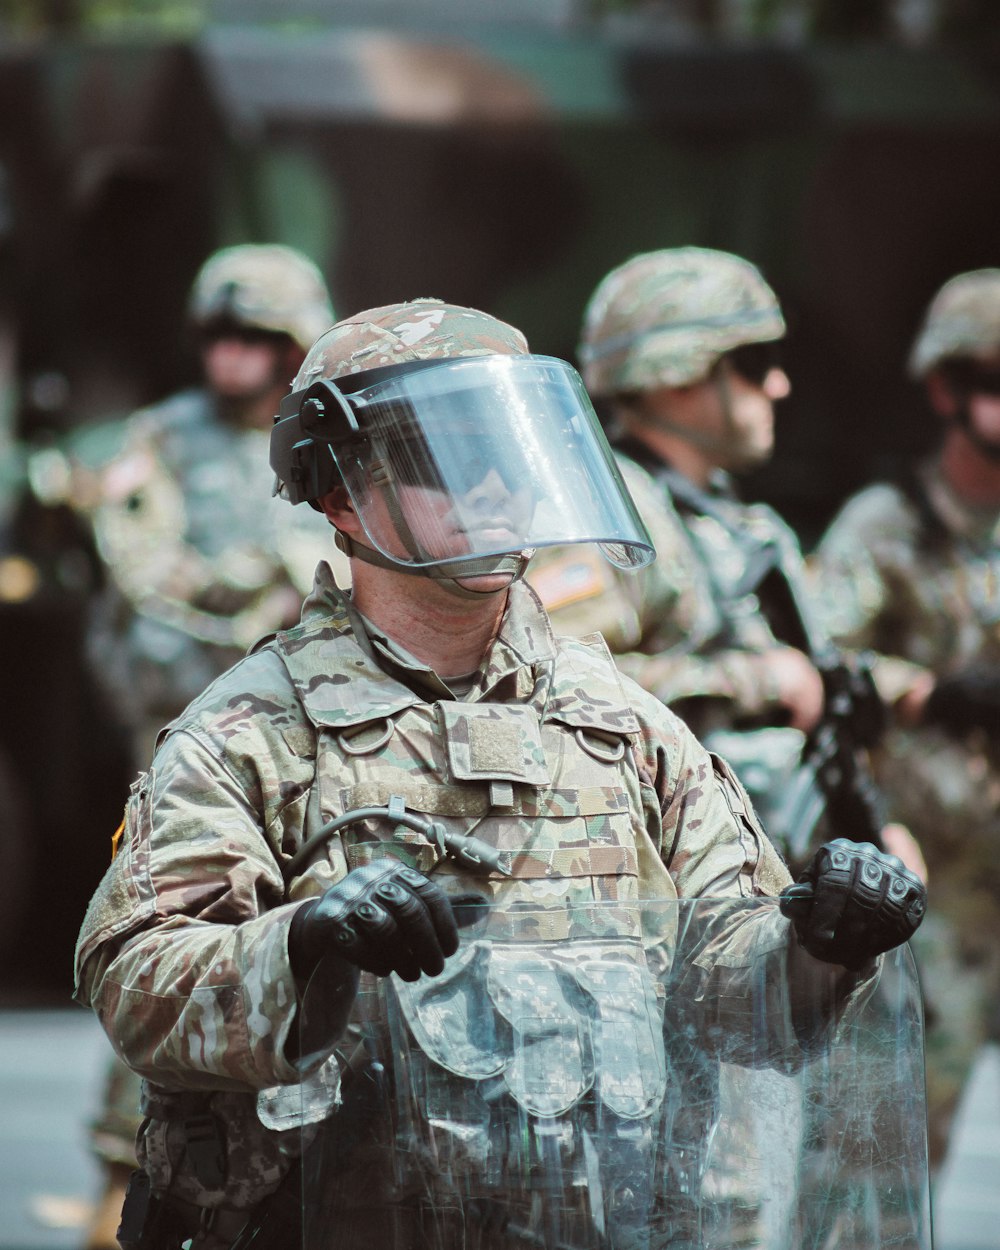 man in brown and black camouflage uniform wearing helmet